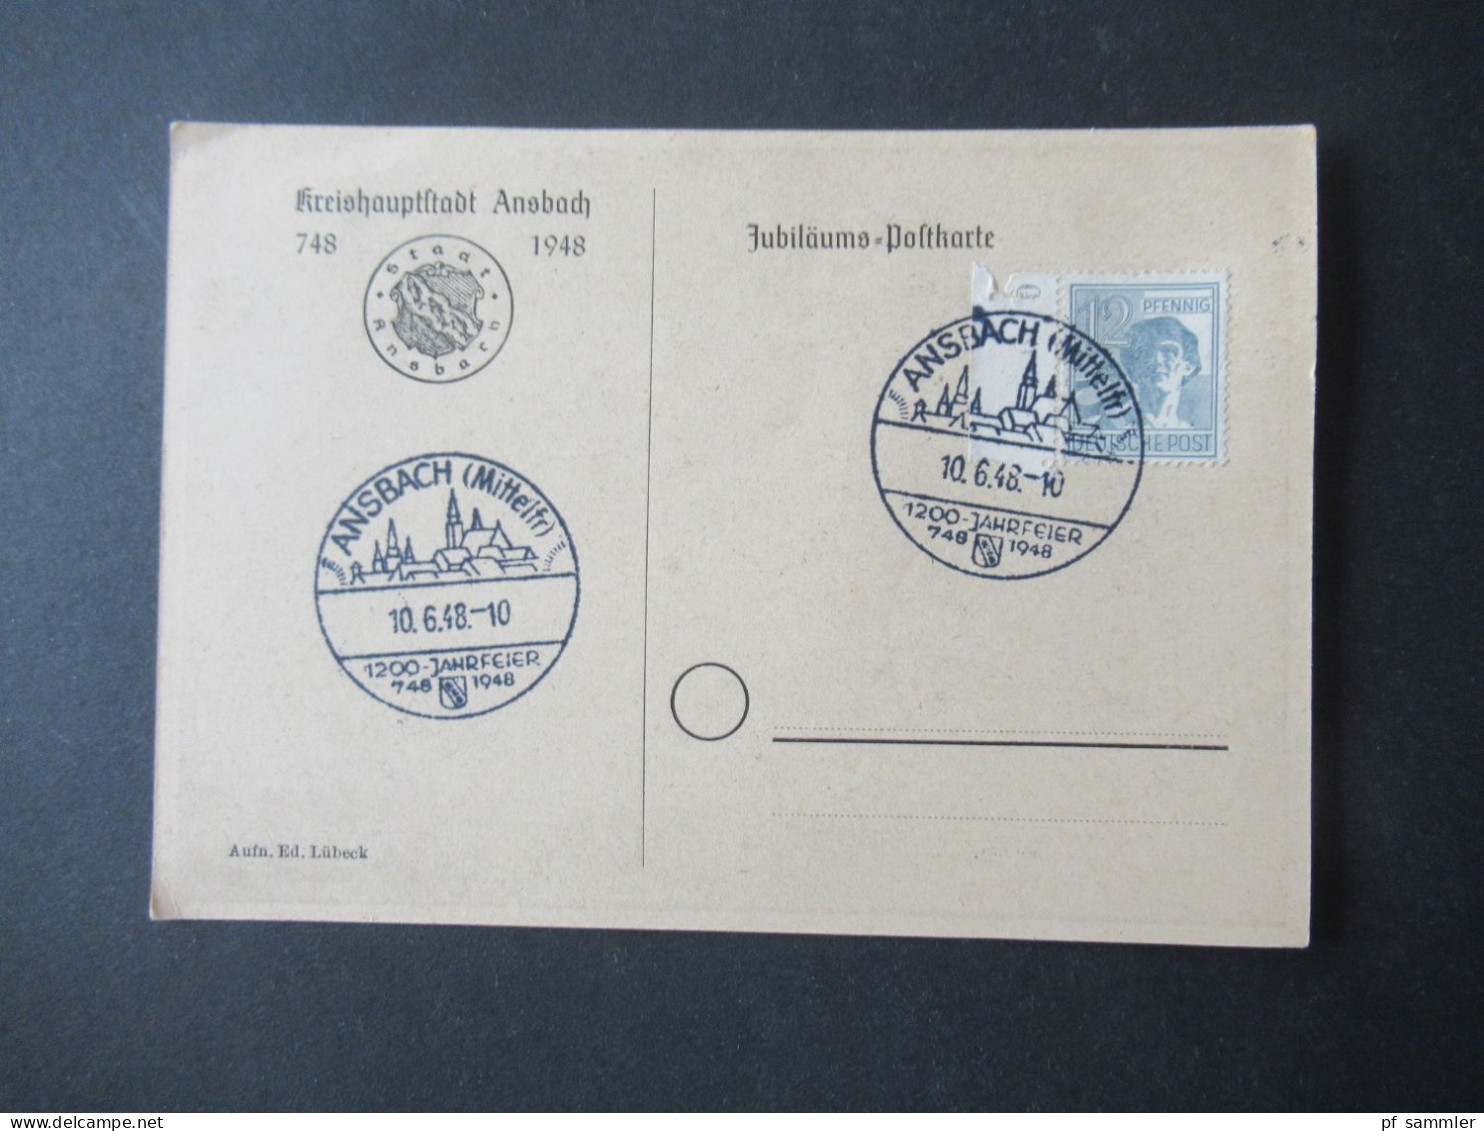 Kontrollrat 1948 PK Kreishauptstadt Ansbach Und Sonderstempel Ansbach (Mittelfr) 1200 Jahrfeier 748 - 1948 - Briefe U. Dokumente